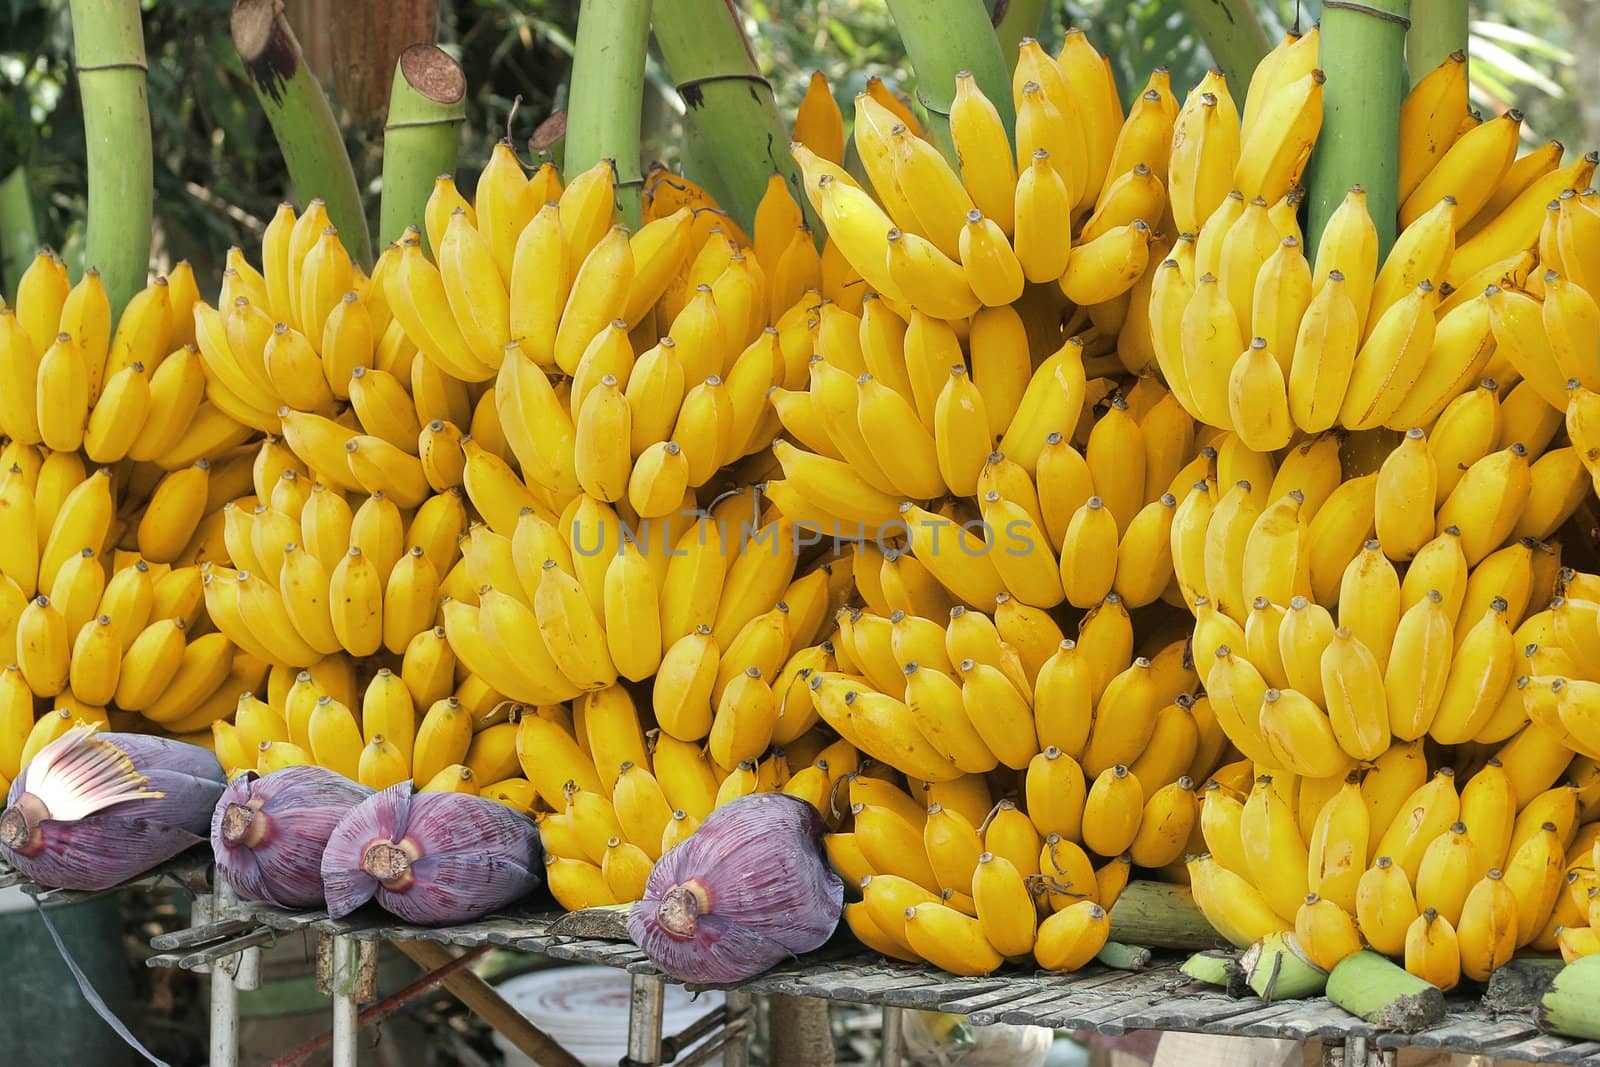 Yellow banana brunches and banana flowers